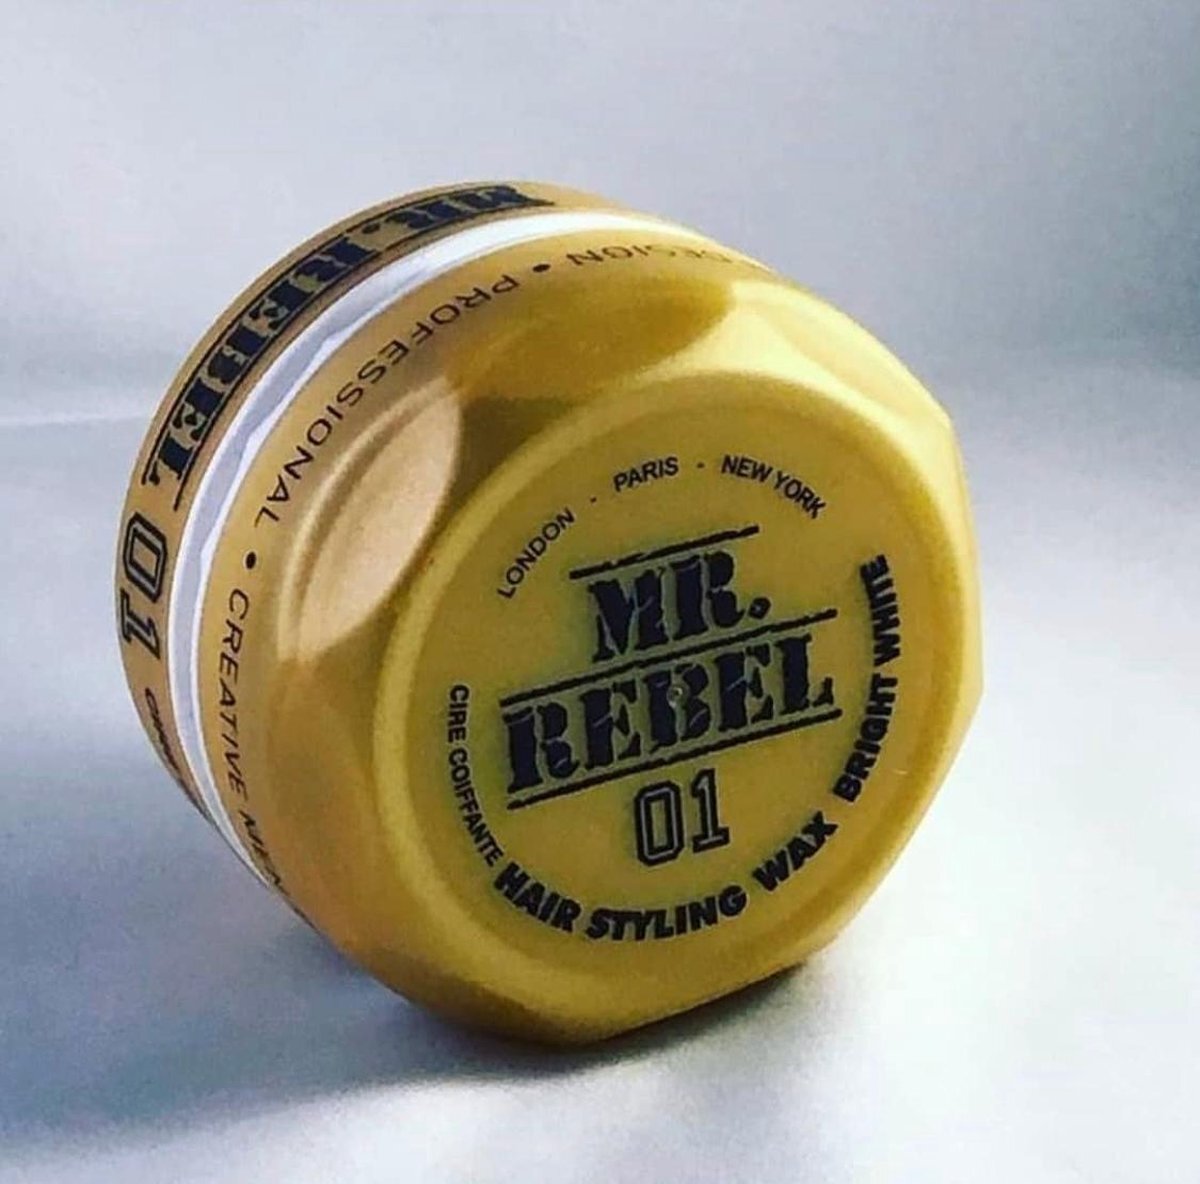 Mr. Rebel Mr.Rebel - Wax 01-HAARWAX- Hair styling wax bright white-WAX - HAIR STYLING WAX -HAAR STYLING - STYLING HAAR - HAAR - KAPPER HAIR WAX -KAPPERS – 150 ml-Wax